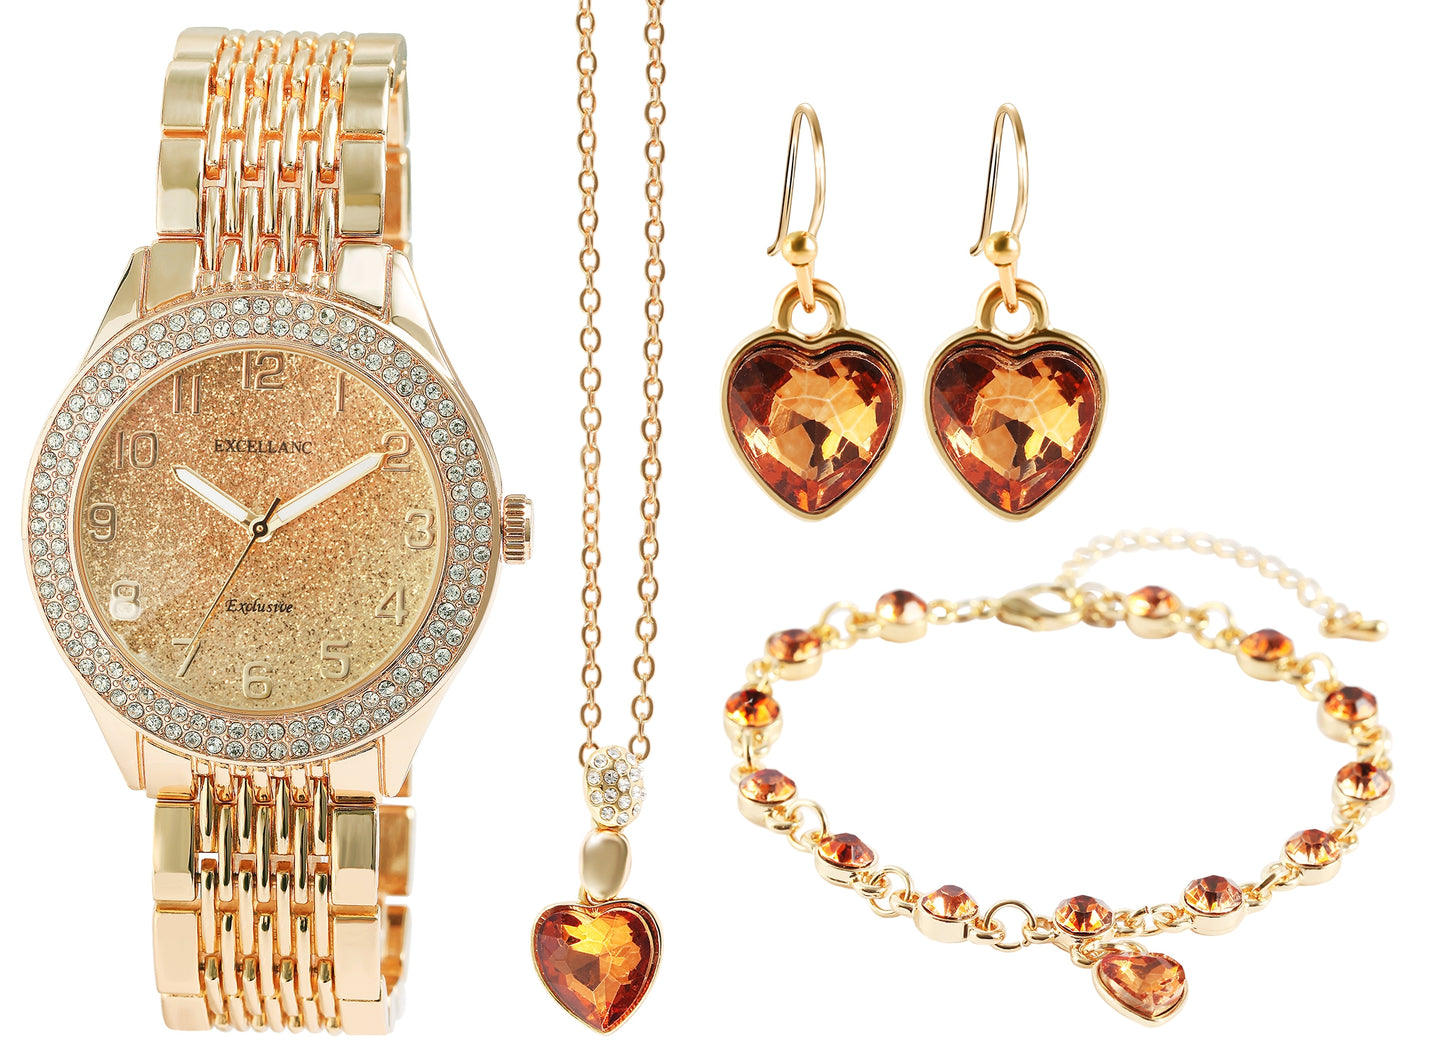 Zestaw damskich zegarków prezentowych Excellanc z bransoletą i naszyjnikiem ze złotymi kryształami Emporia w kształcie serca, w kolorze złotym